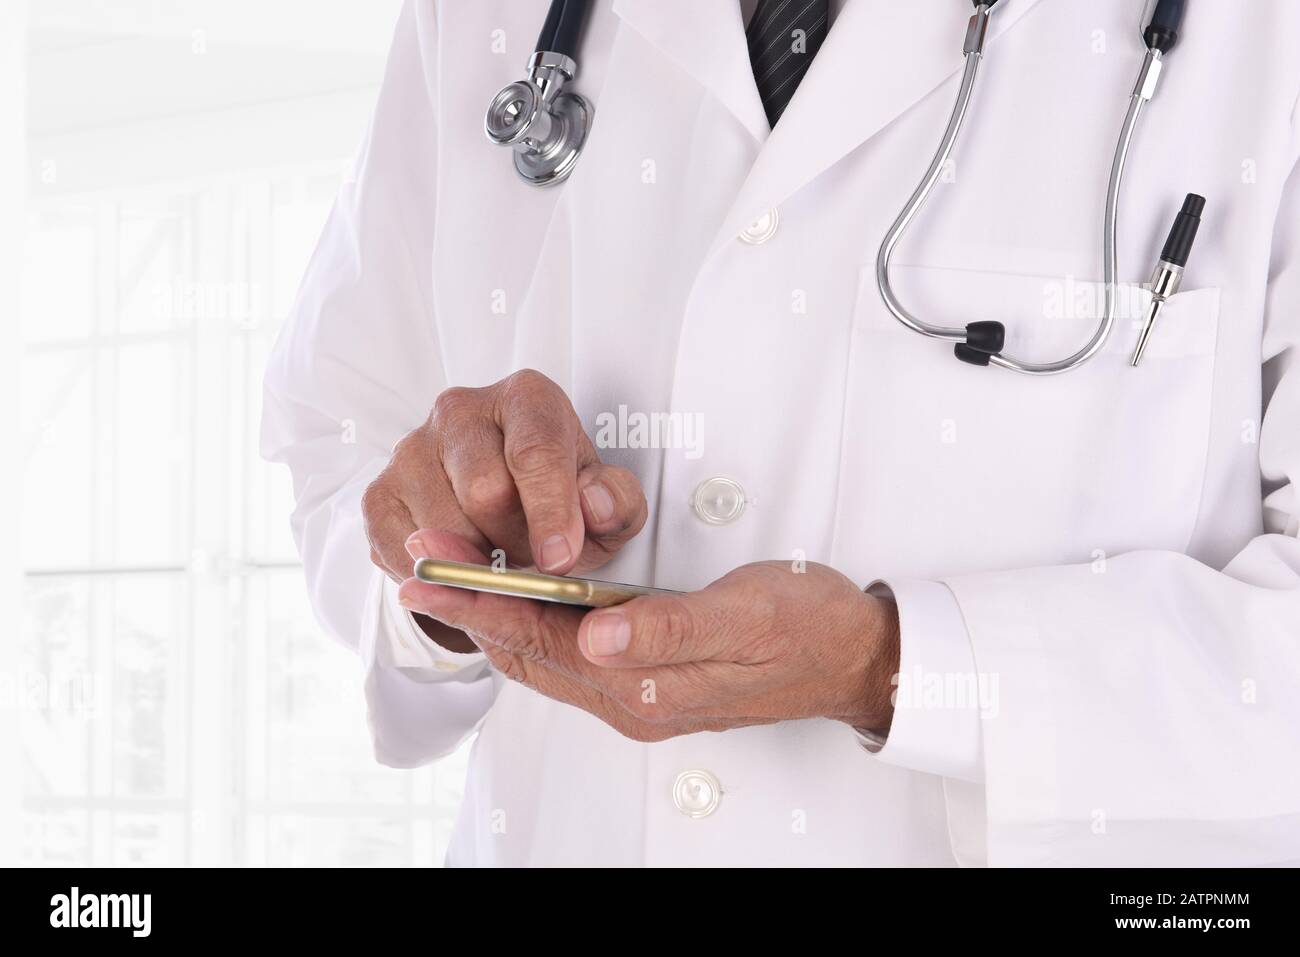 Nahaufnahme eines Arztes, der auf seinem Handy in einer modernen medizinischen Einrichtung getextet wird. Der Mensch ist nicht erkennbar. Stockfoto